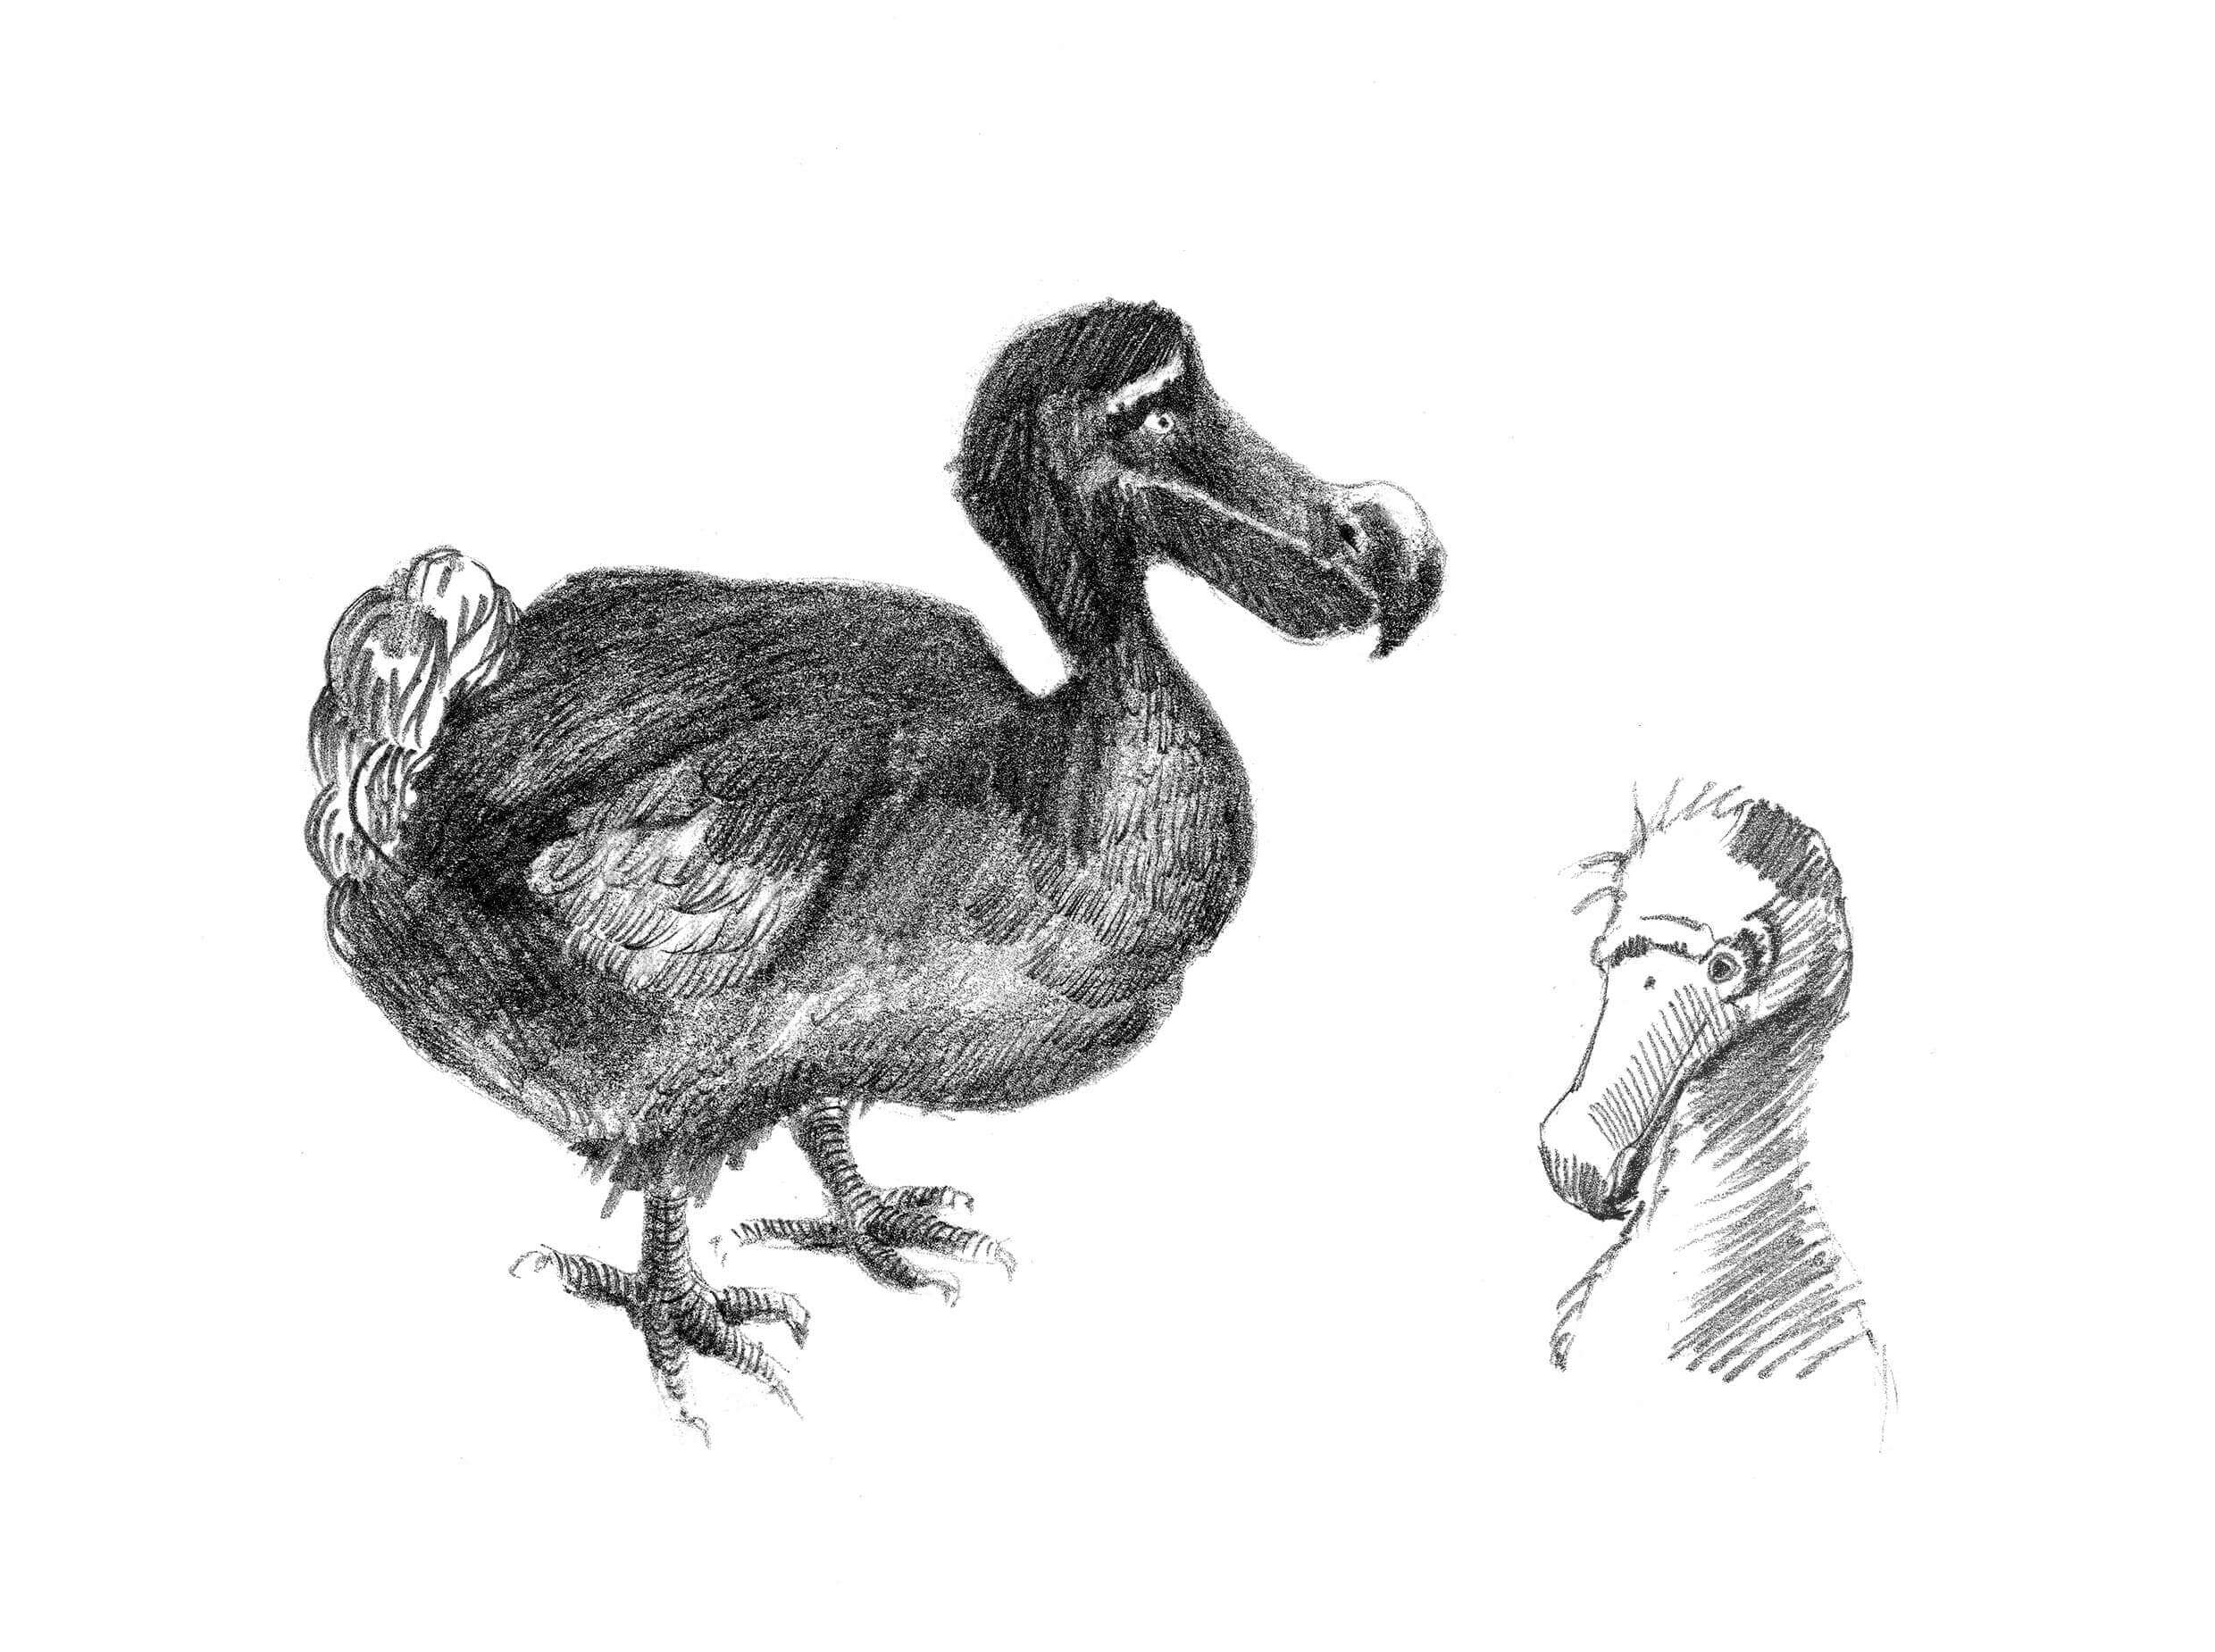 Como e por que o dodô foi extinto?